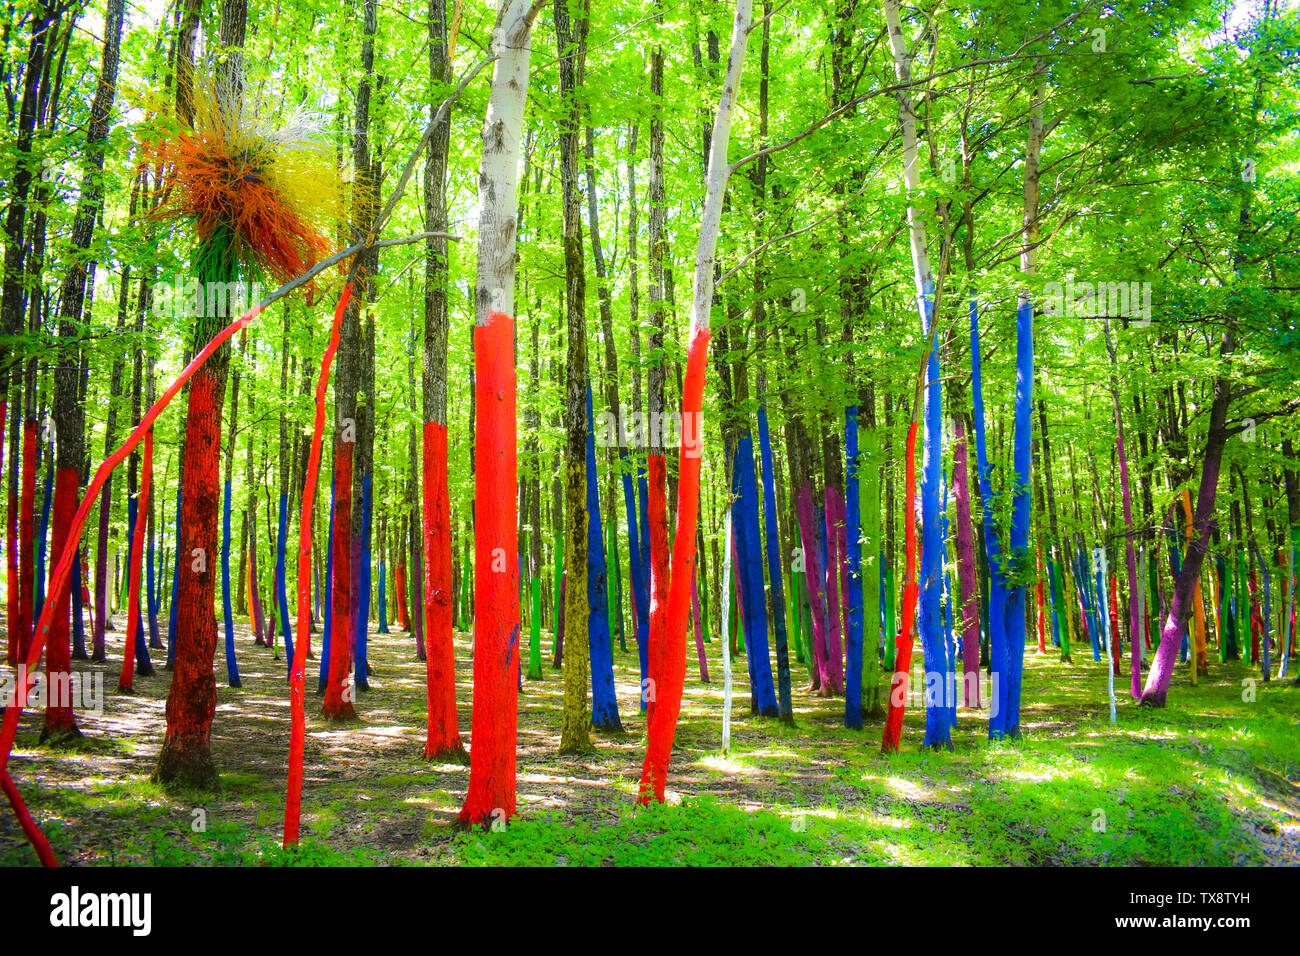 La colorata foresta o Padurea colorata da Poienari Romania. Incredibile tronchi dipinti in colori diversi. Nessuno sarà più in grado di tagliare questi alberi b Foto Stock